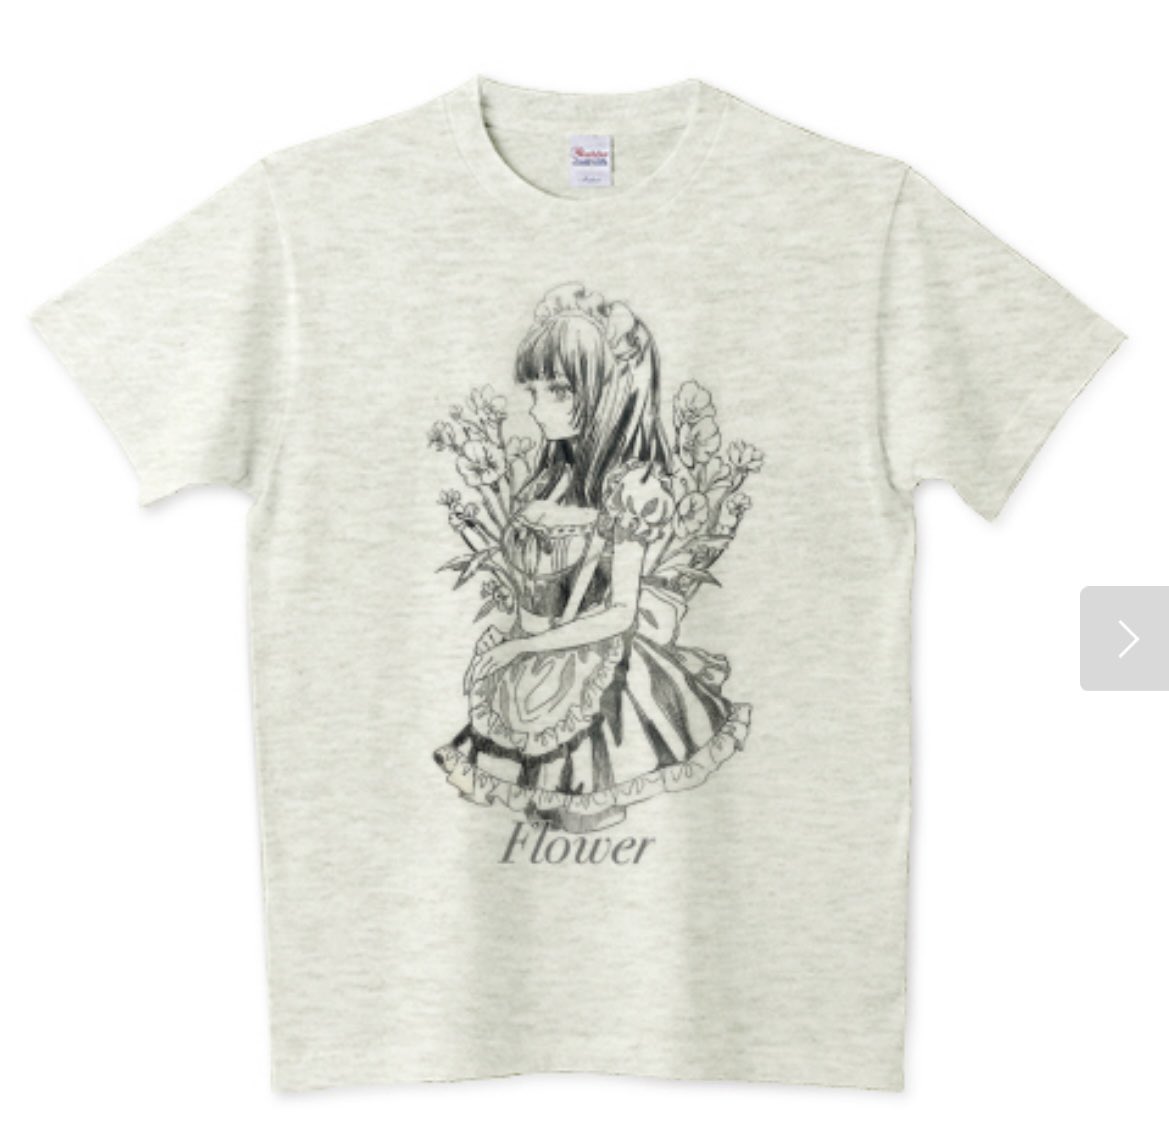 Tシャツトリニティさんにて「Flower」Tシャツご注文頂きました‼️ありがとうございます🙇‍♀️💐

商品はこちらから⬇️

https://t.co/IPyFw6YNAT

#Tシャツトリニティ
#Tシャツ 